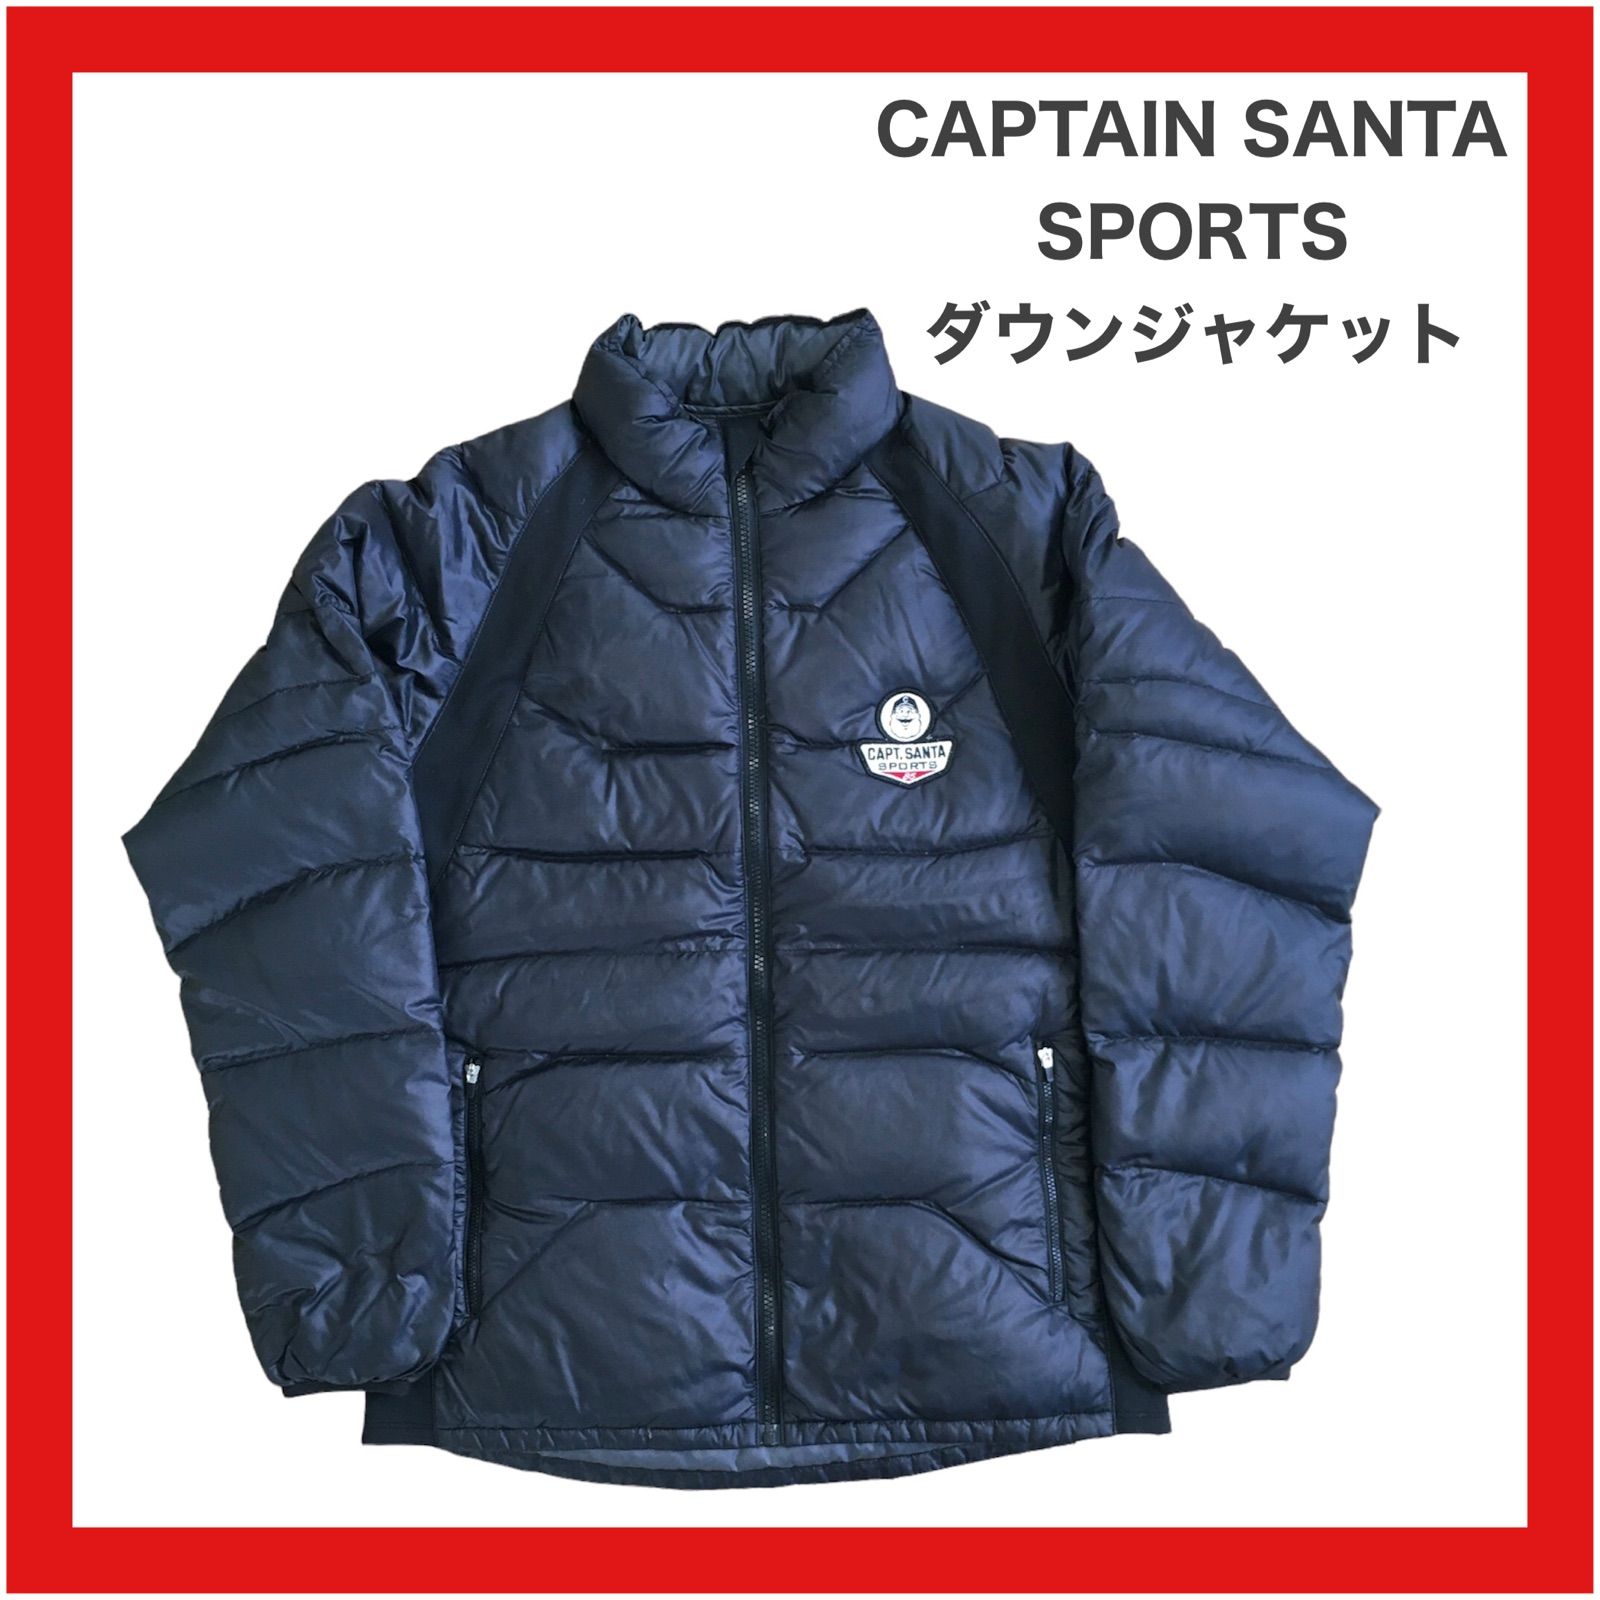 7,199円CaptainSantaキャプテンサンタメンズ ダウンジャケット ダークグレーL